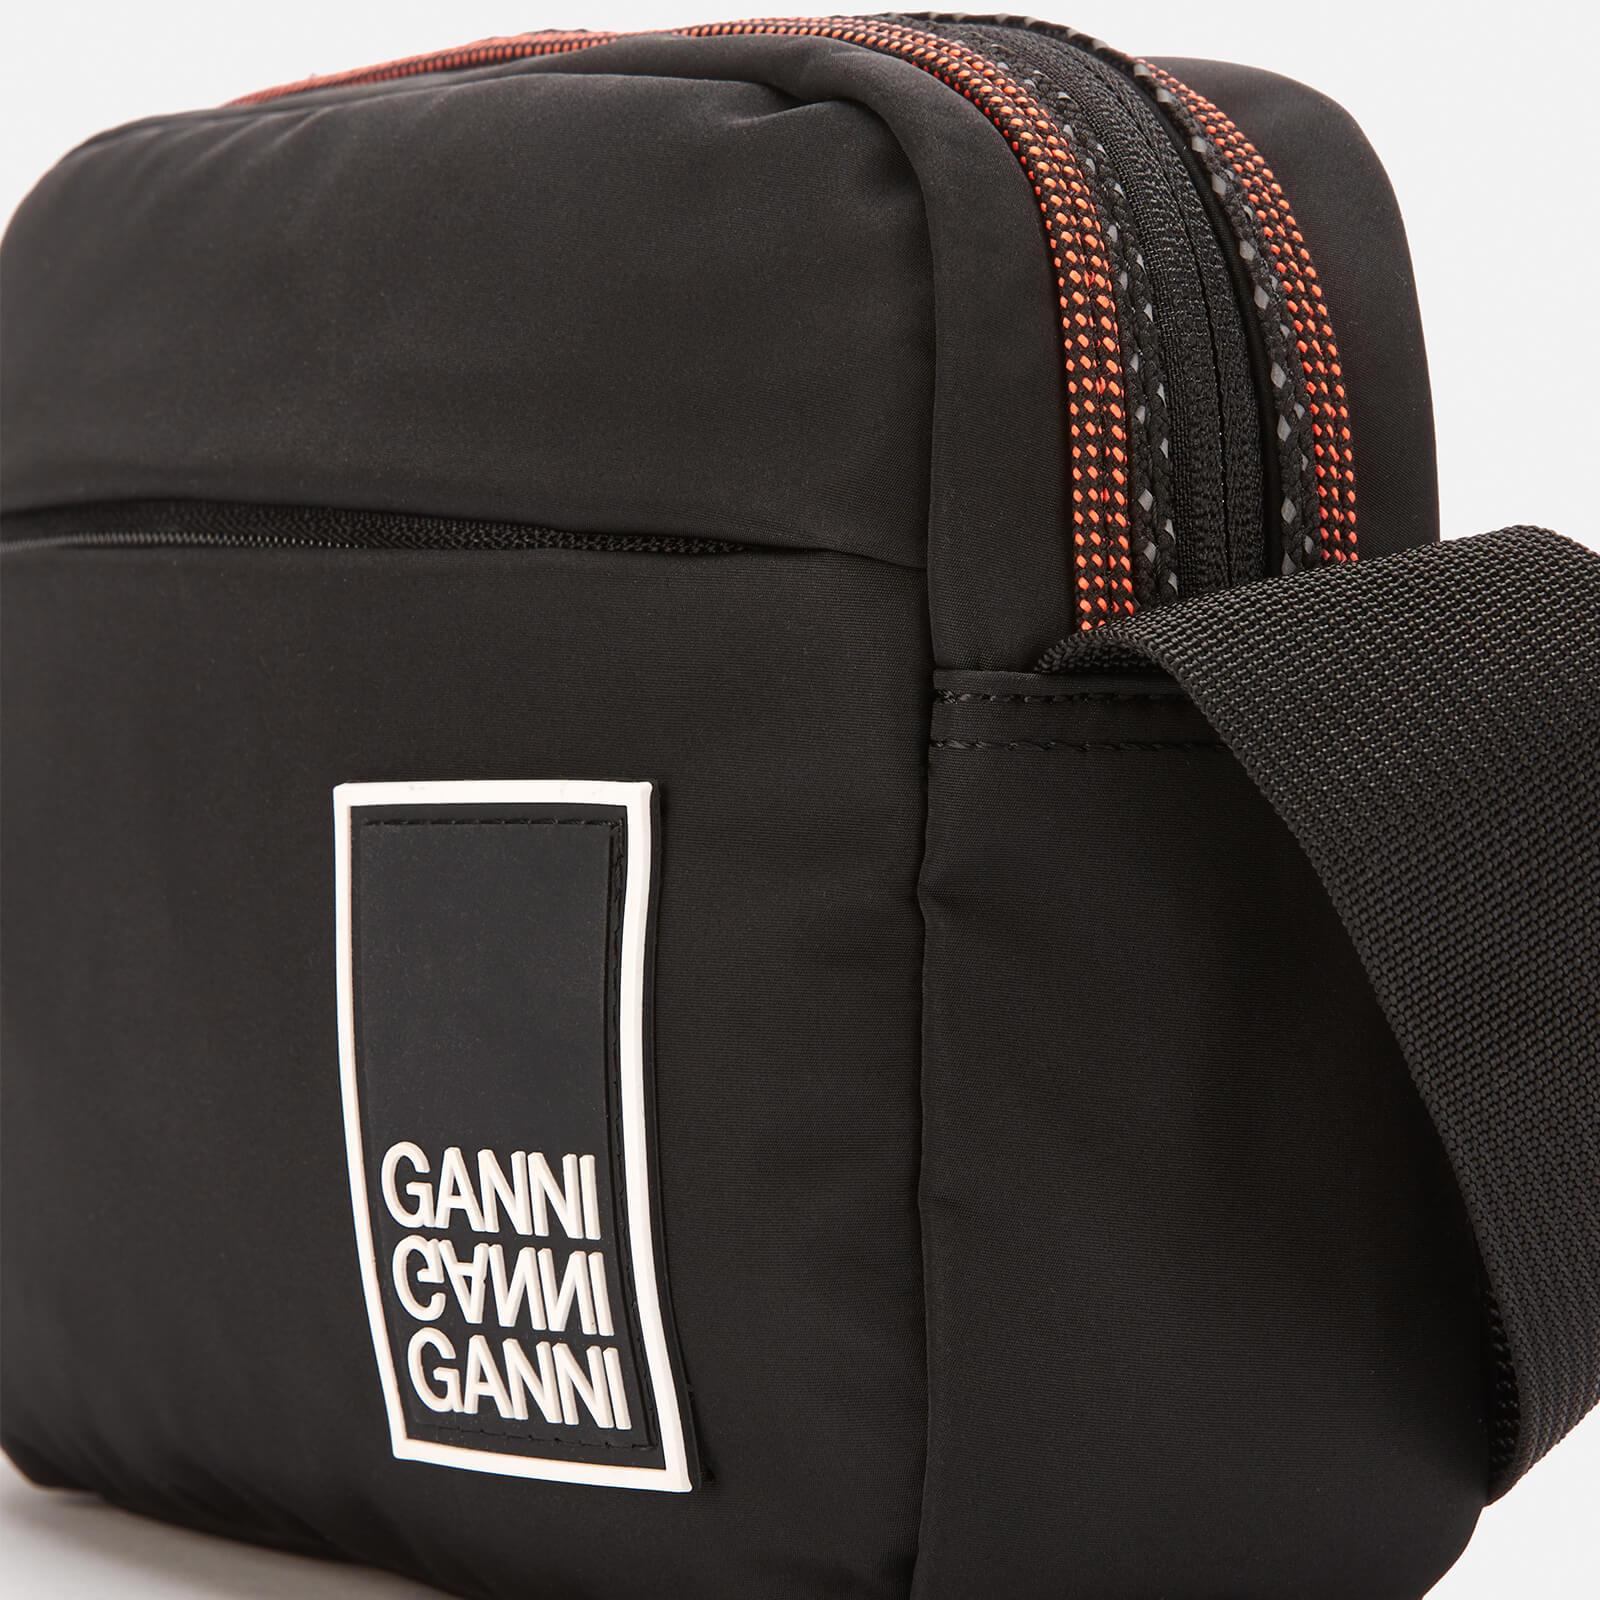 Ganni Tech Fabric Cross Body Bag in Black - Lyst